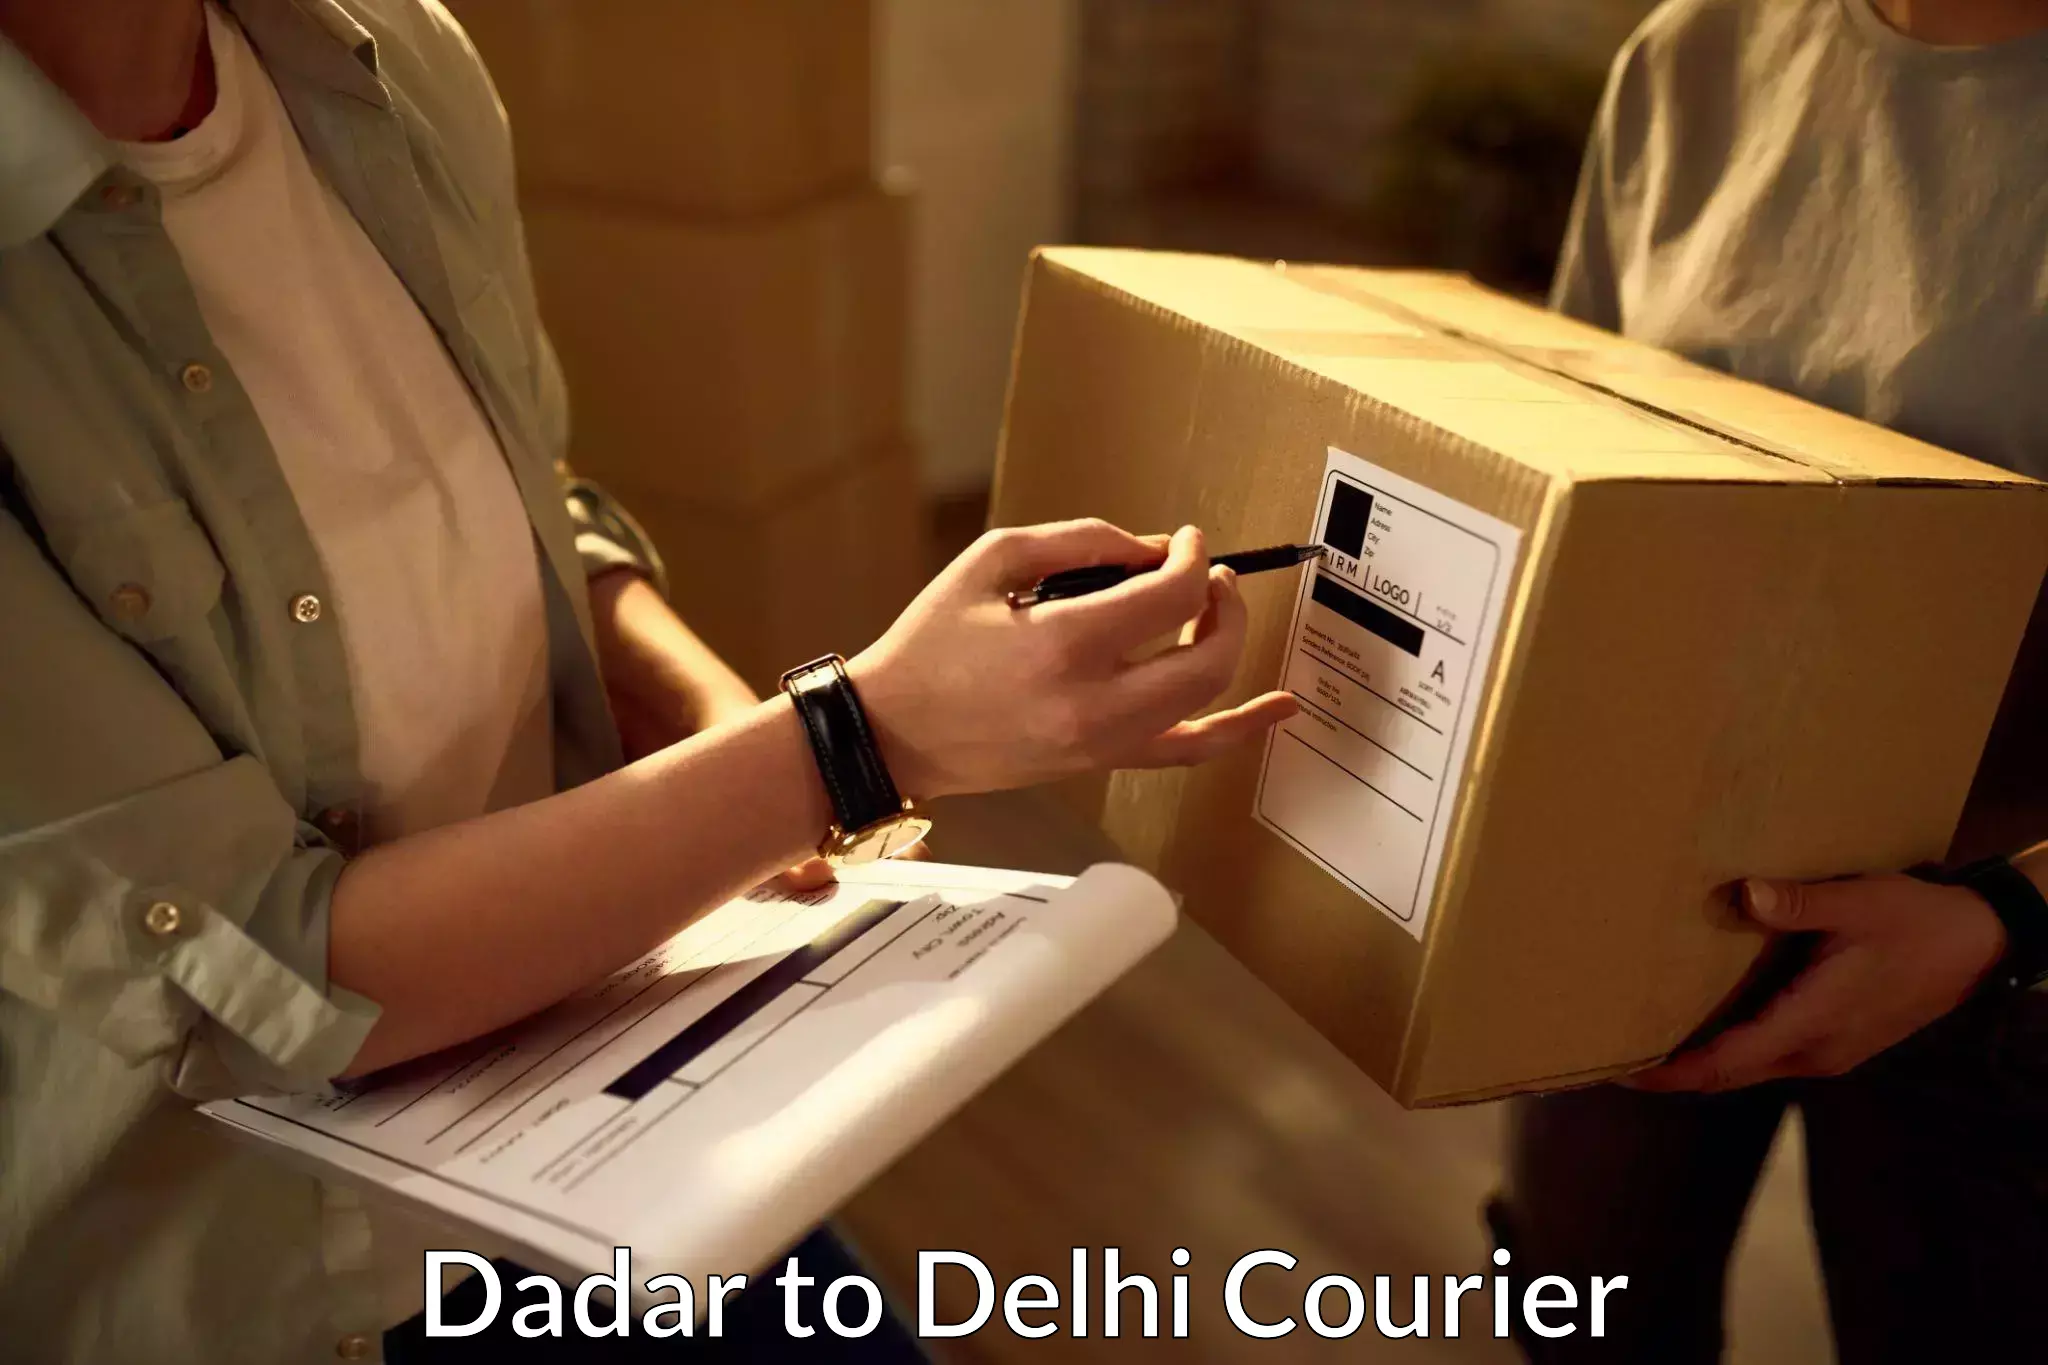 Cargo delivery service Dadar to East Delhi